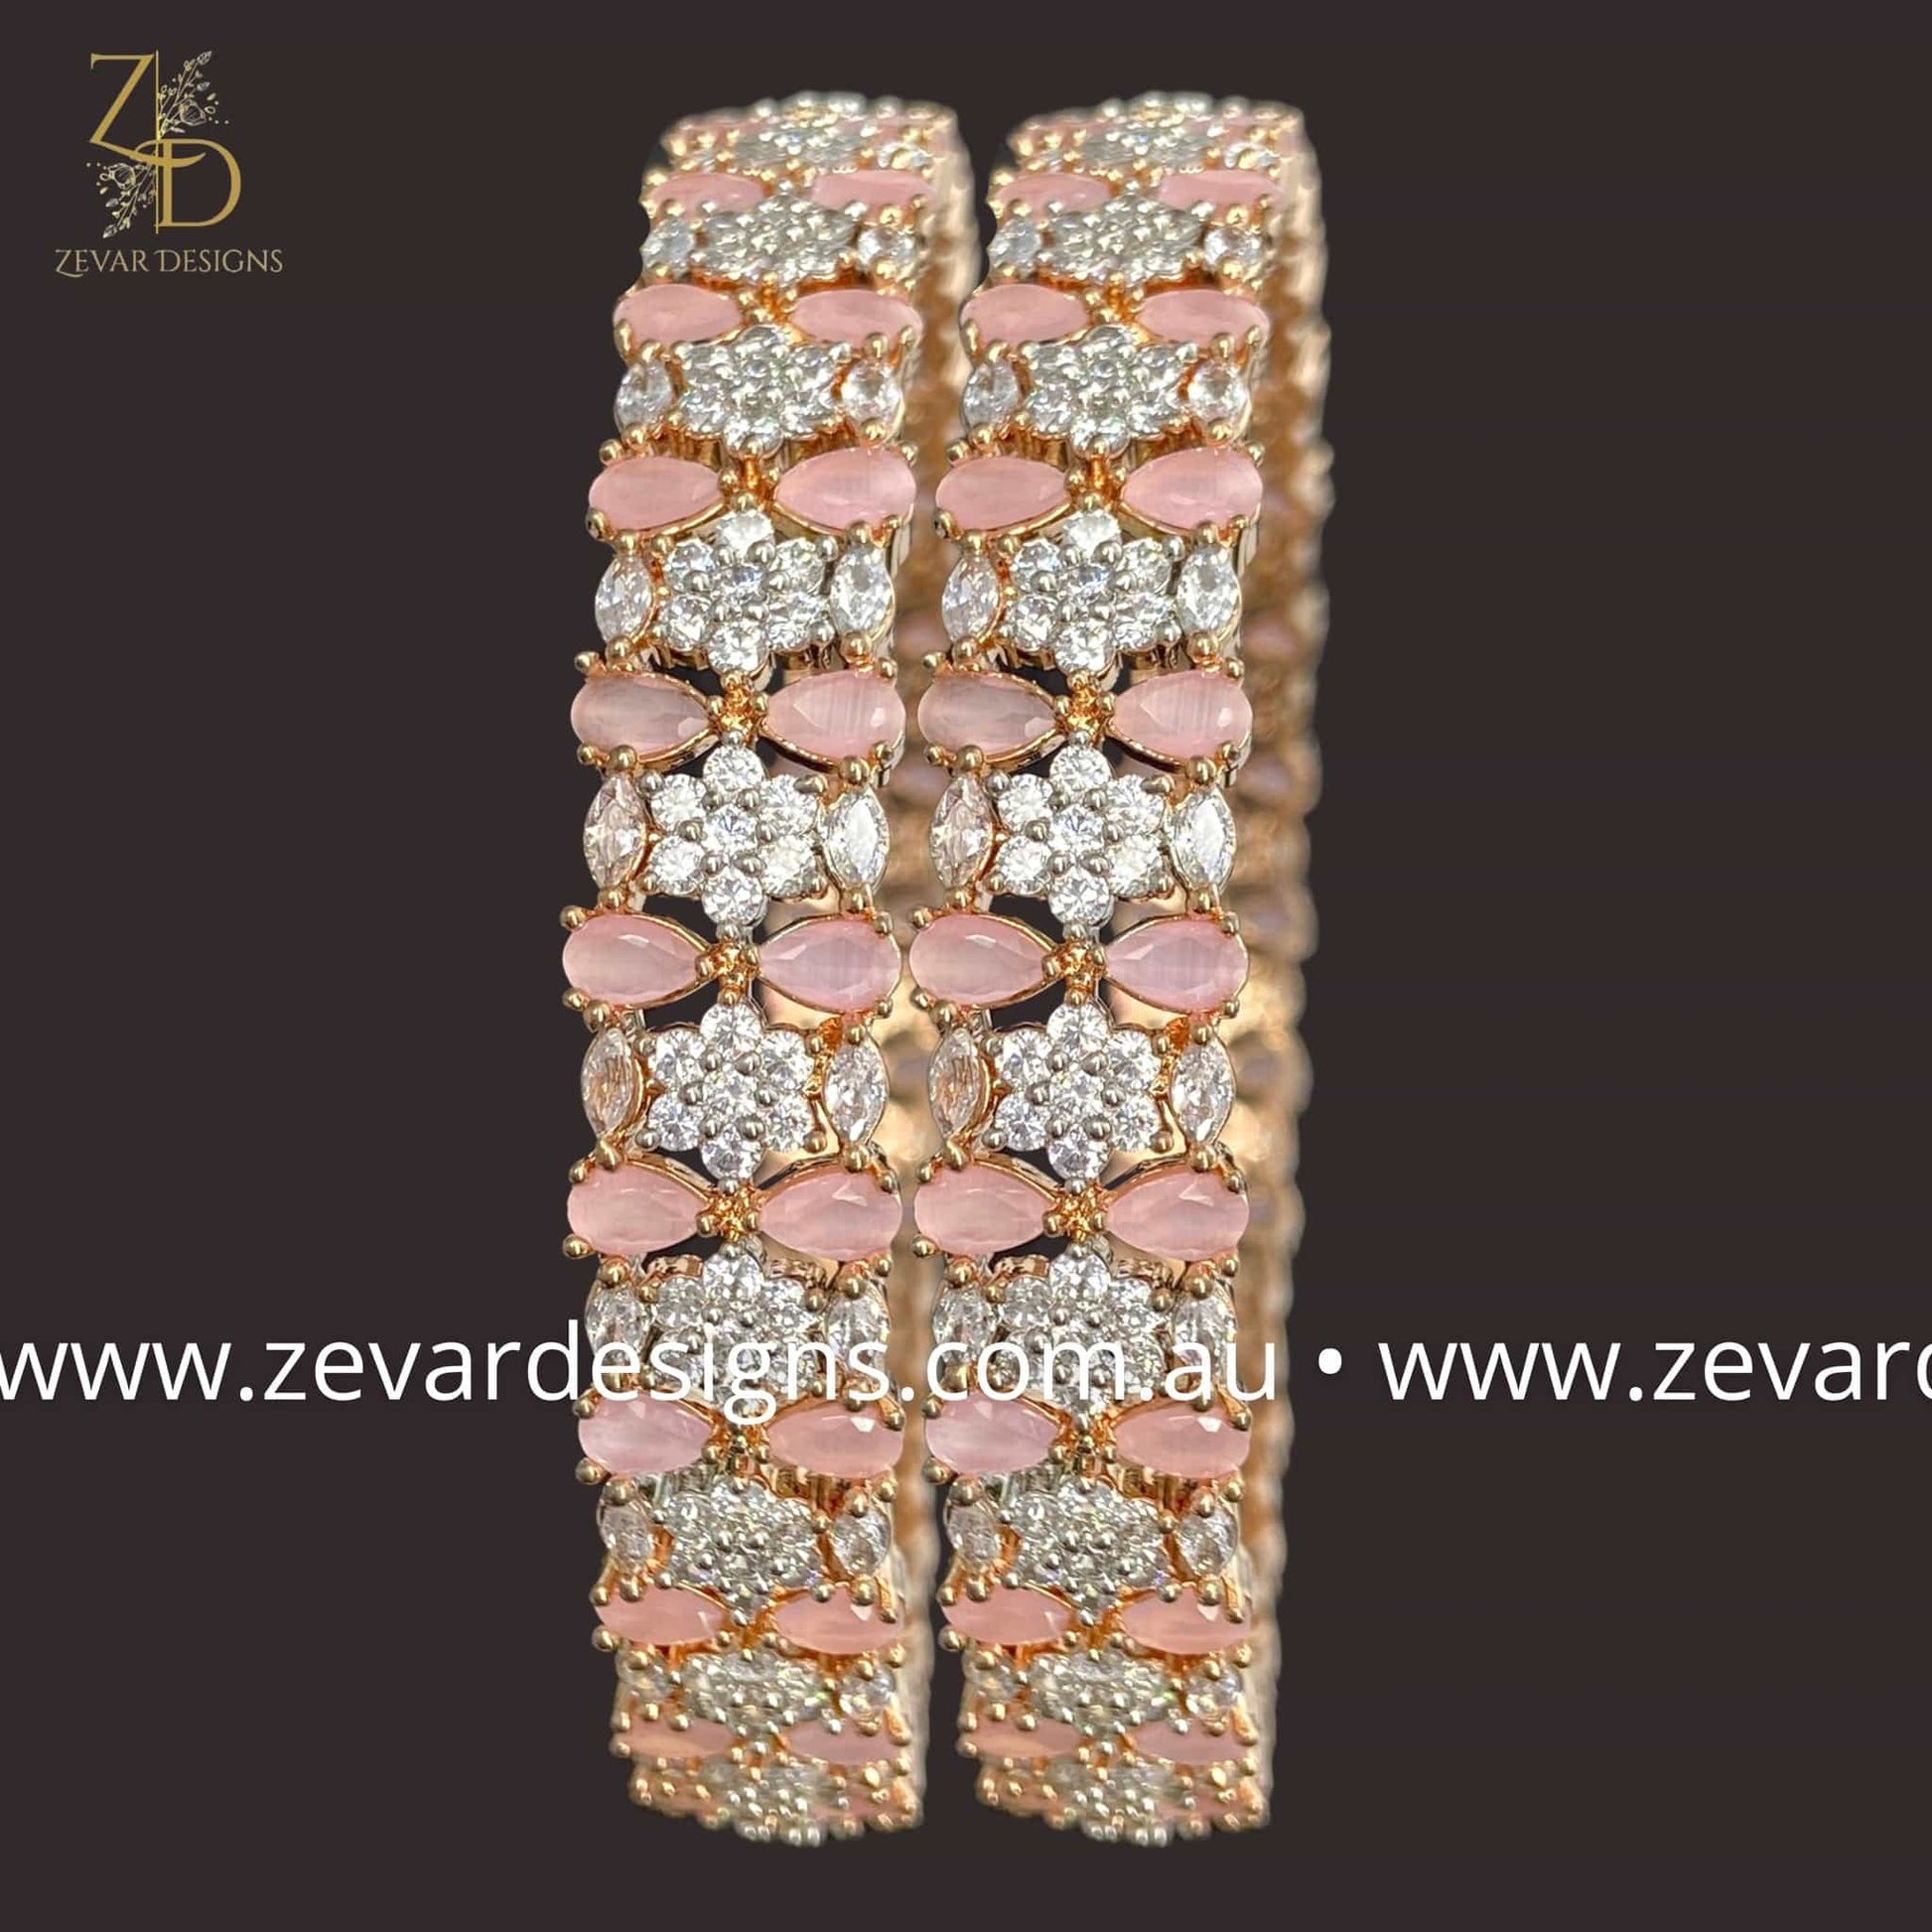 Zevar Designs Bangles & Bracelets - AD AD Bangles - Pink and Rose Gold